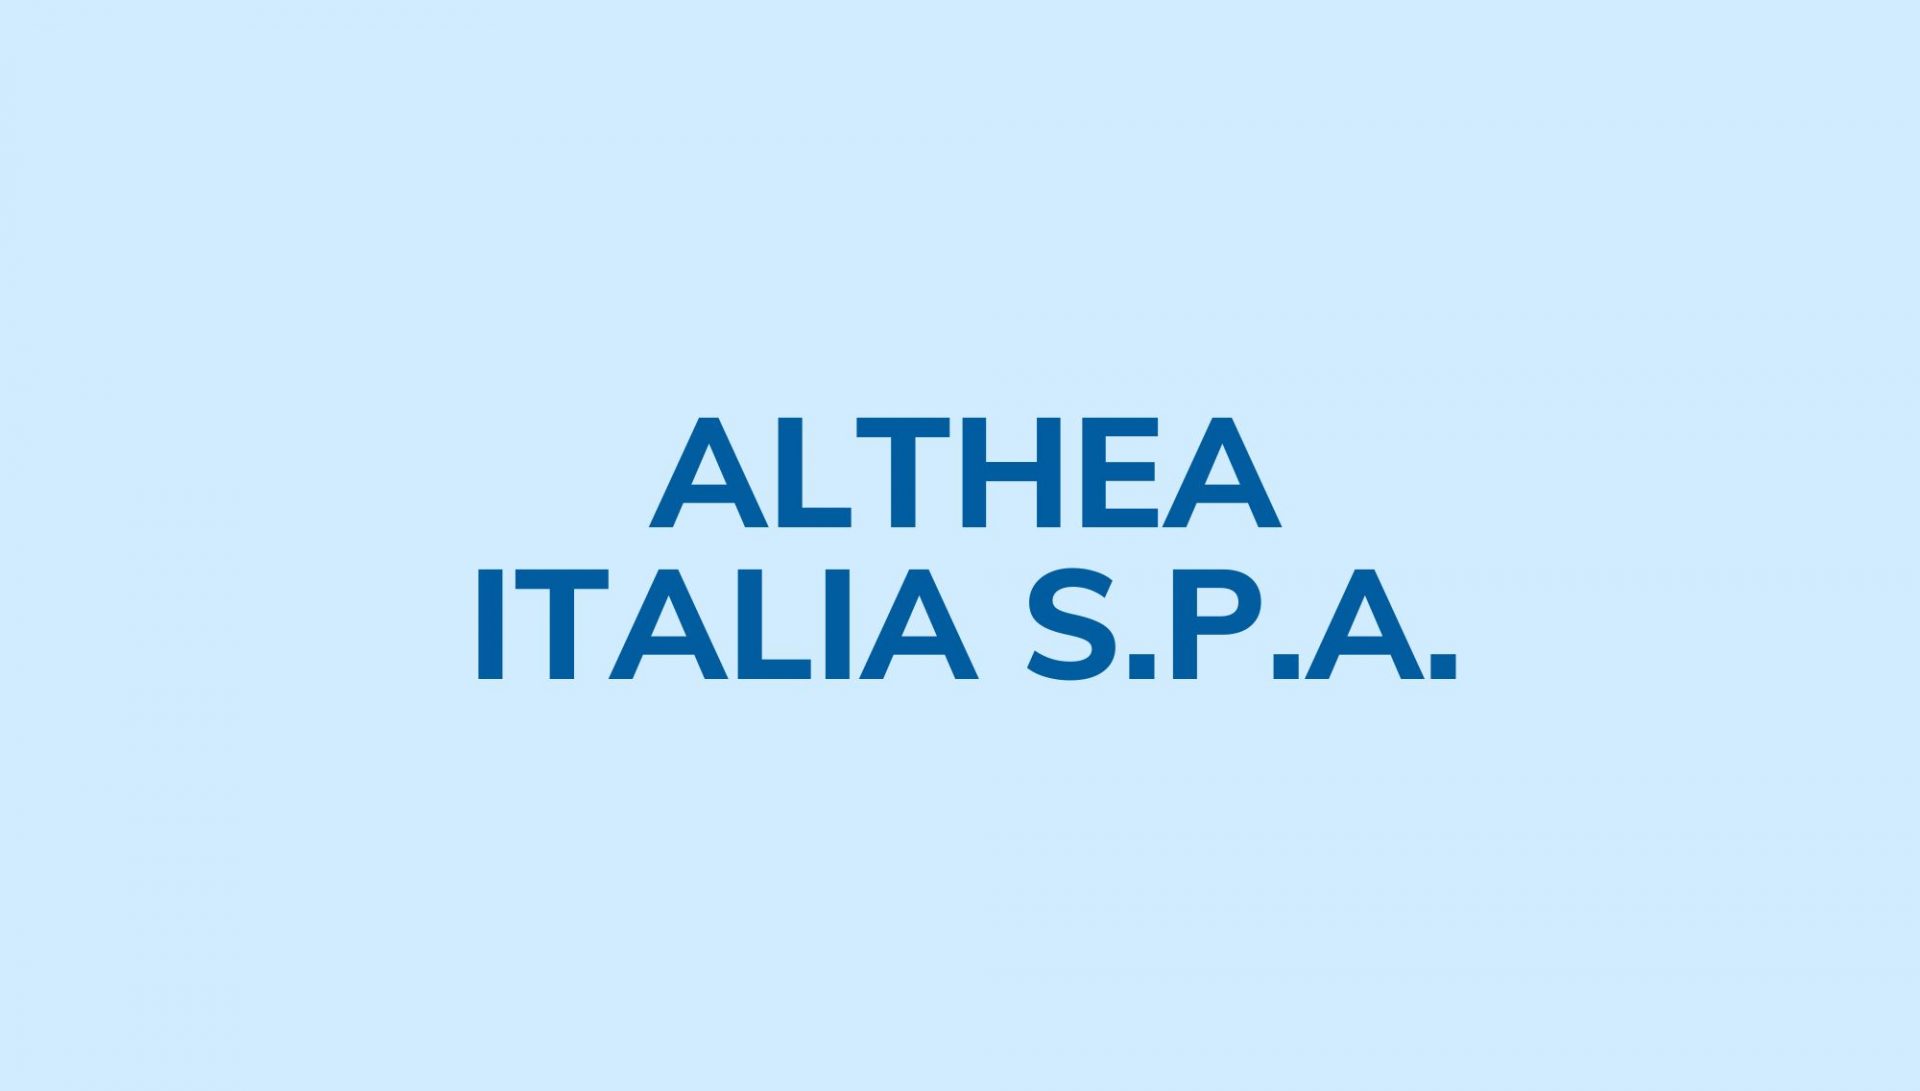 Althea Italia